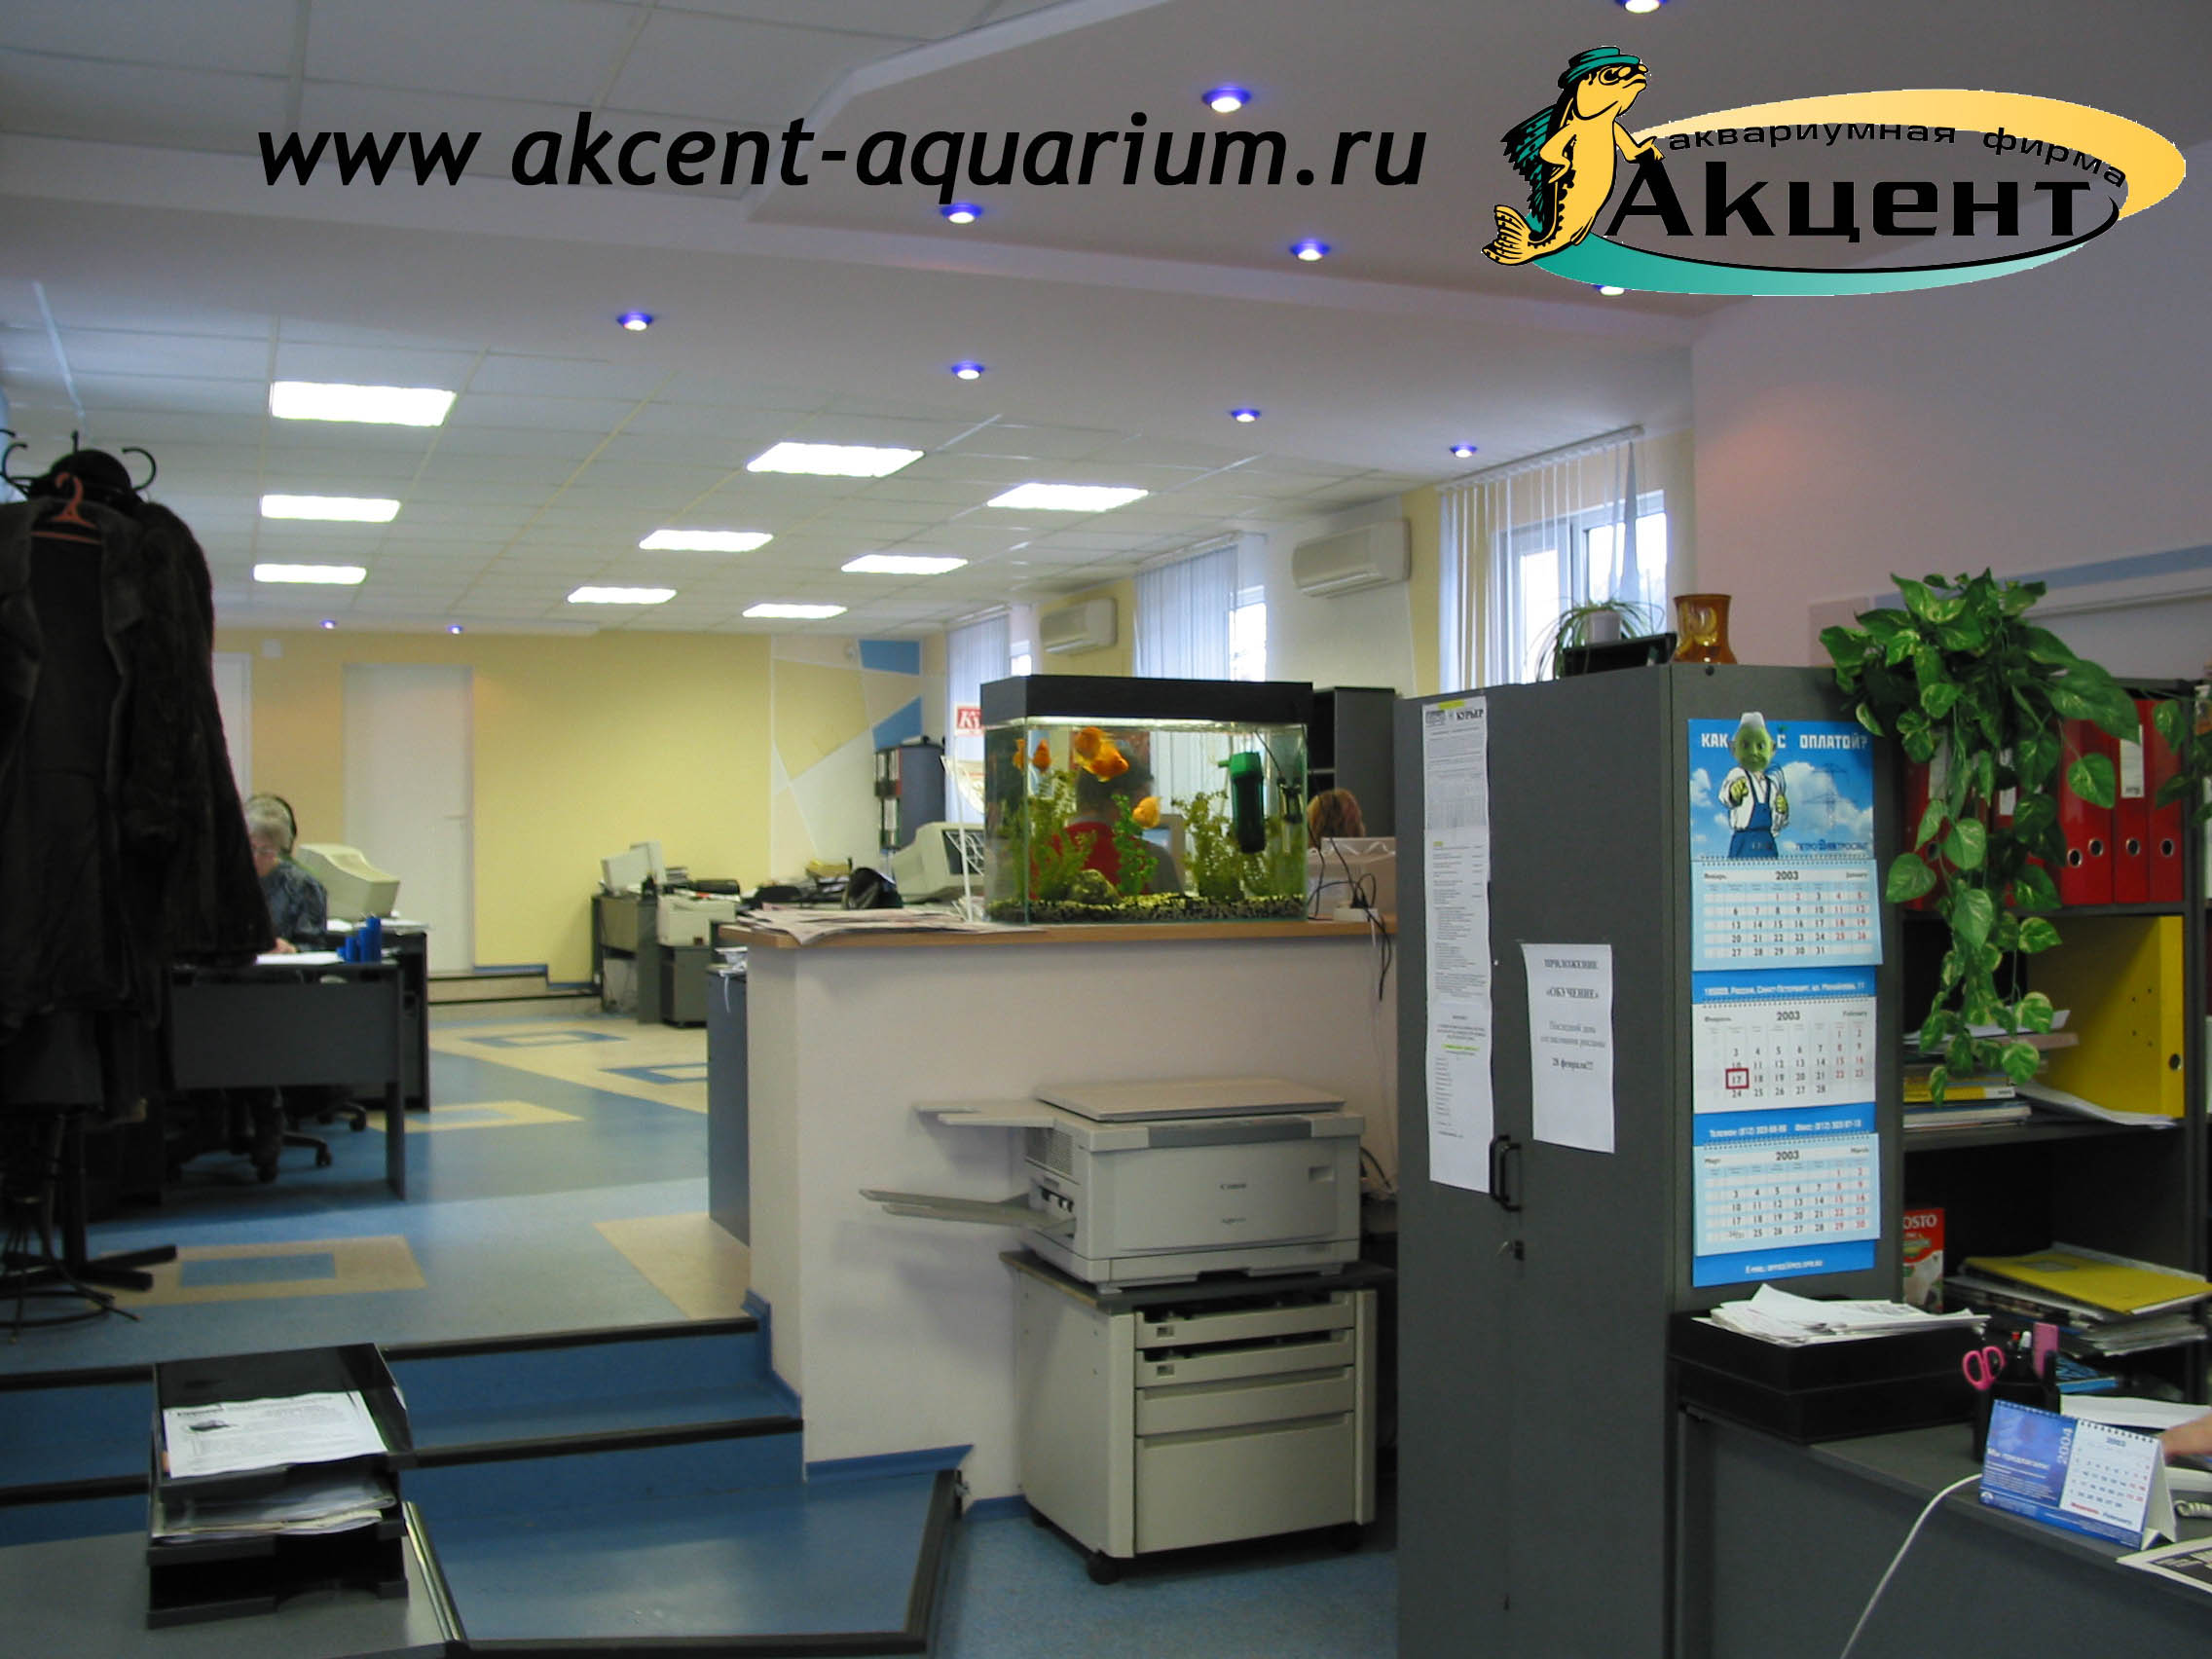 Акцент-аквариум, аквариум с 120 литров, в офисе